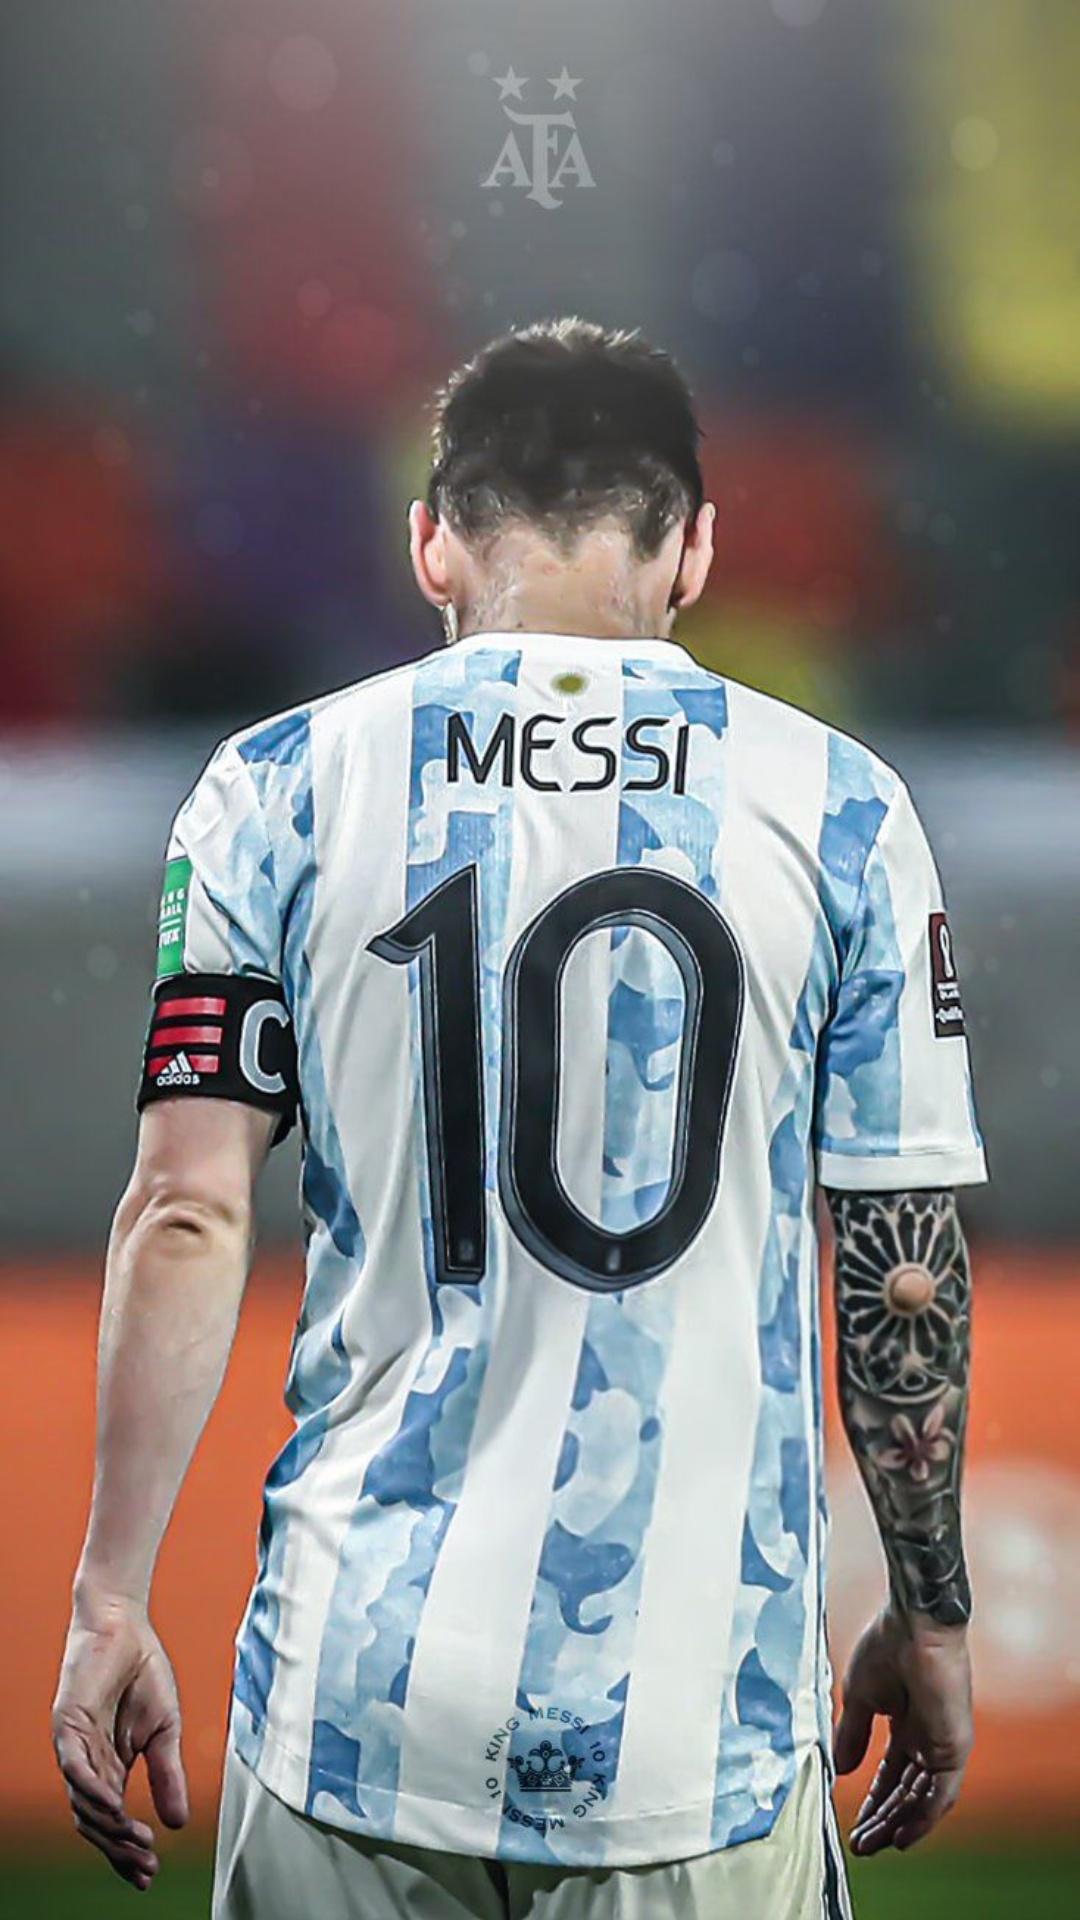 Lionel Messi-led Argentina: Argentina đã có những năm tháng đầy ấn tượng dưới sự dẫn dắt của Lionel Messi. Đến với hình ảnh liên quan đến đội tuyển Argentina và khám phá những khoảnh khắc đỉnh cao của Messi trên con đường chinh phục chiến thắng.